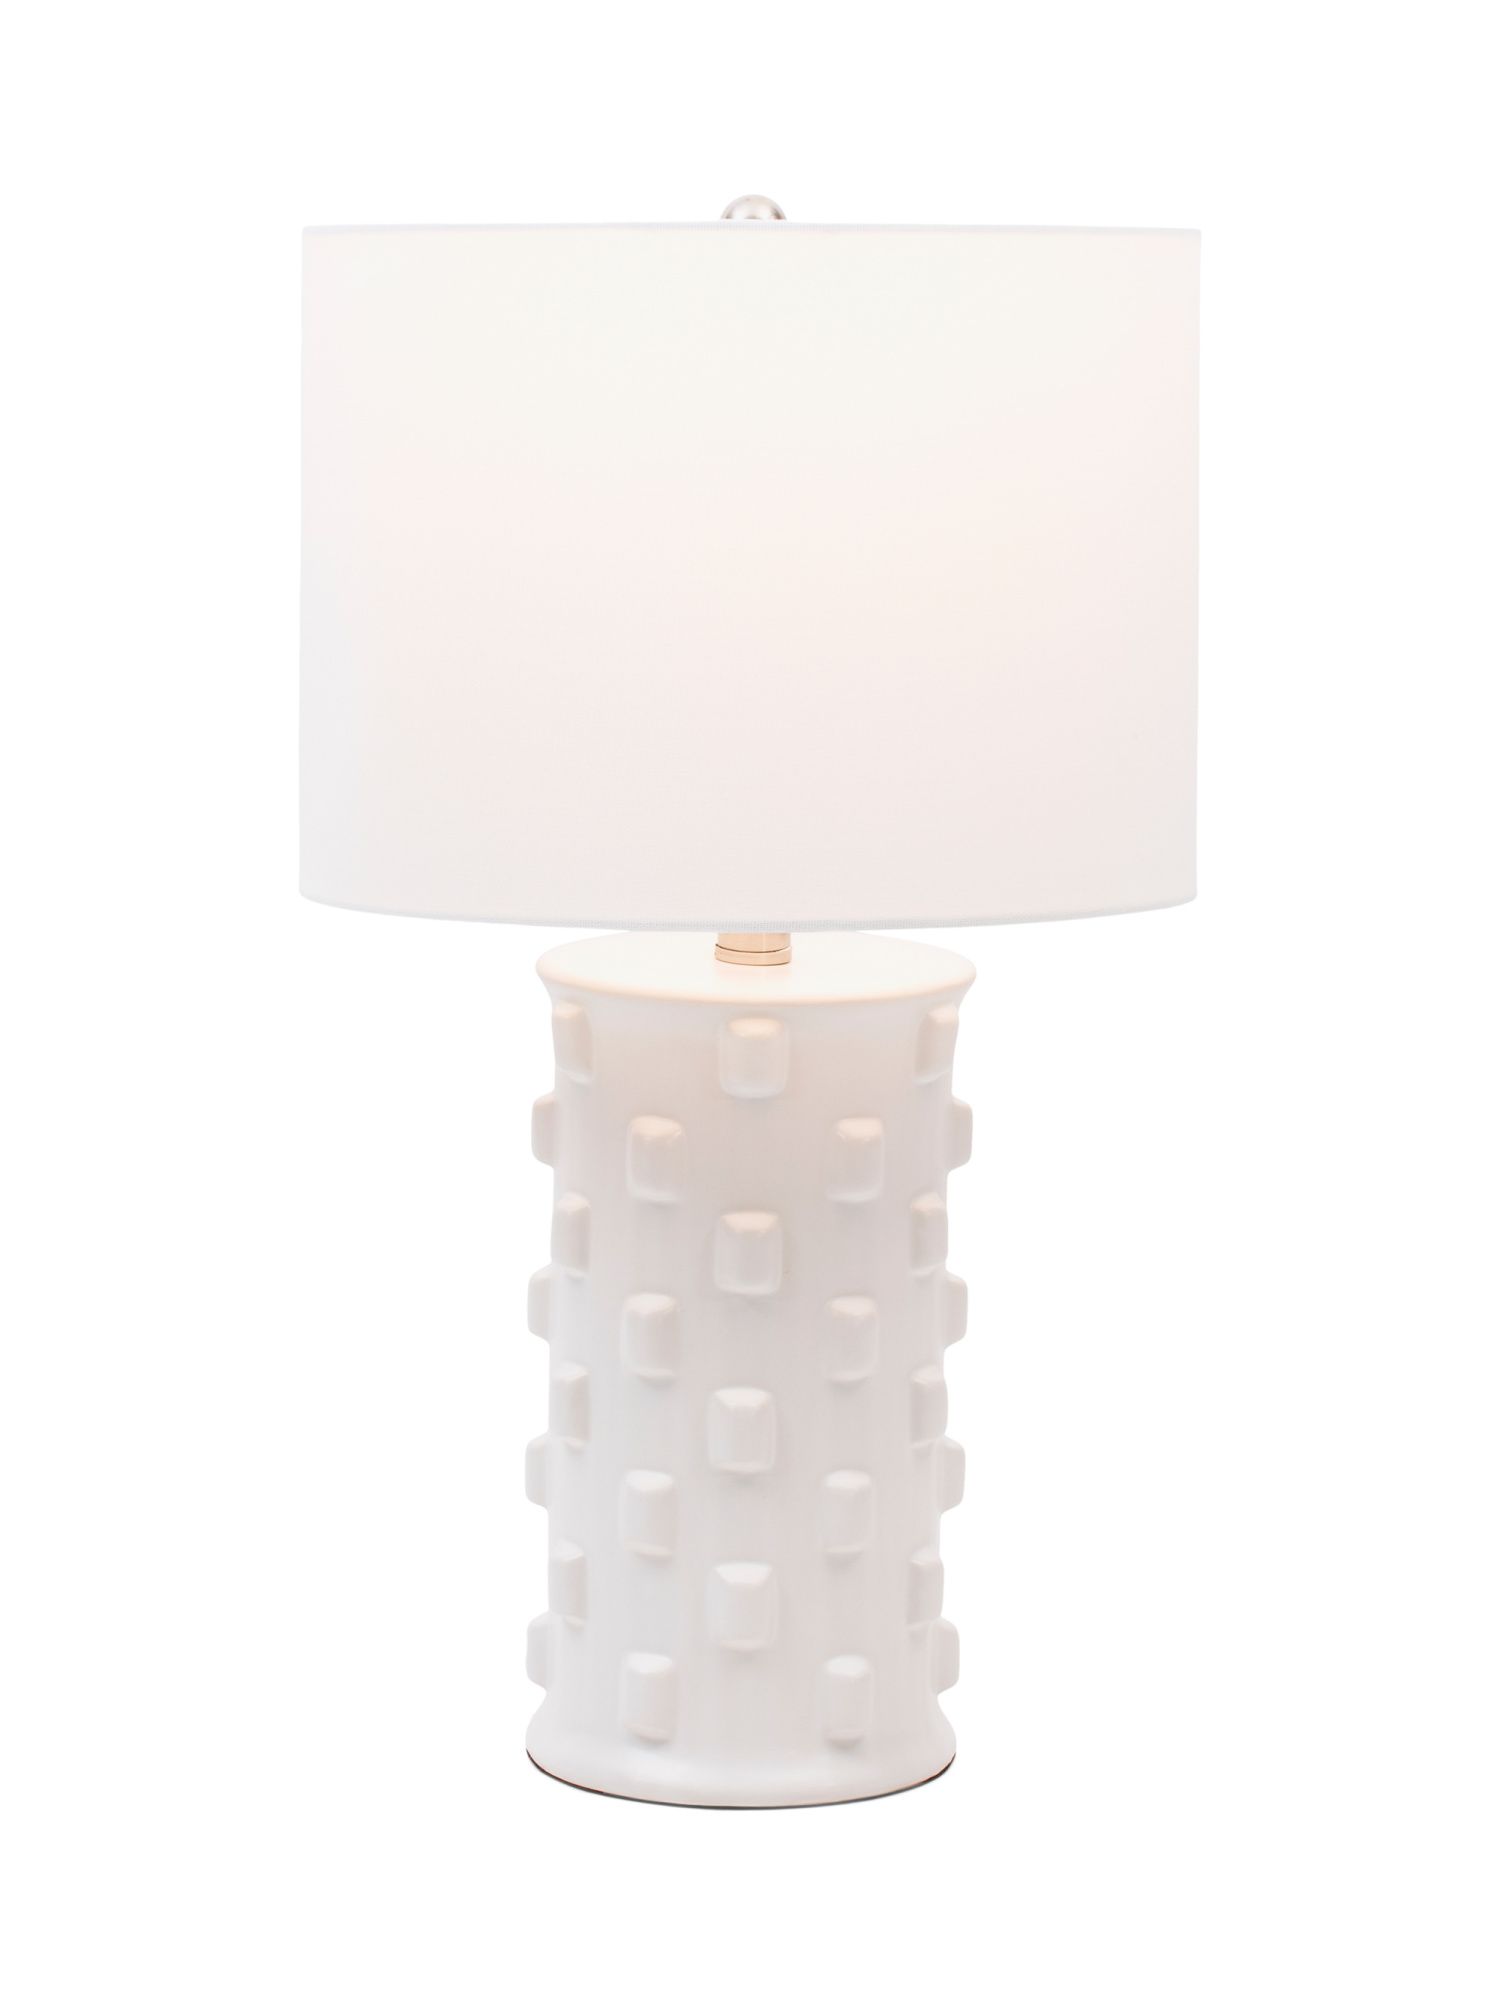 Ceramic Knobby Table Lamp | TJ Maxx